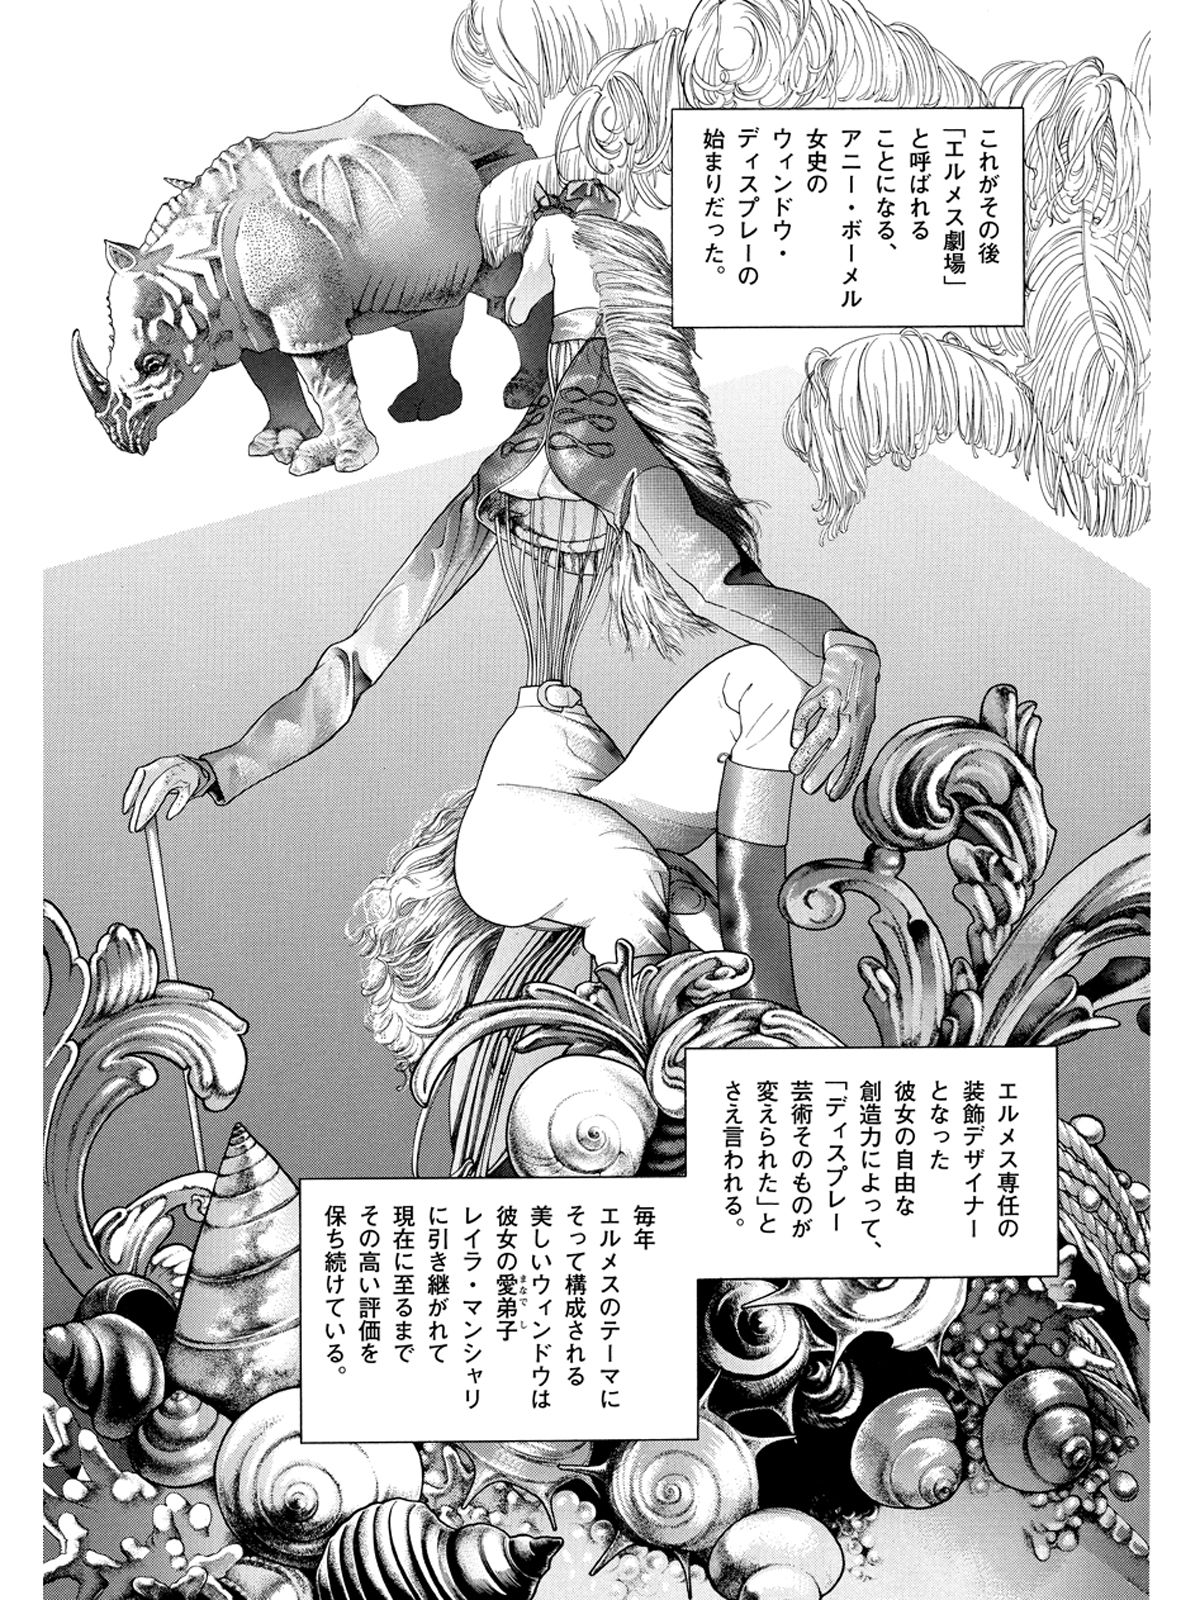 職人技と夢見る力が出会うとき。漫画家、竹宮惠子が描くエルメスの旅路